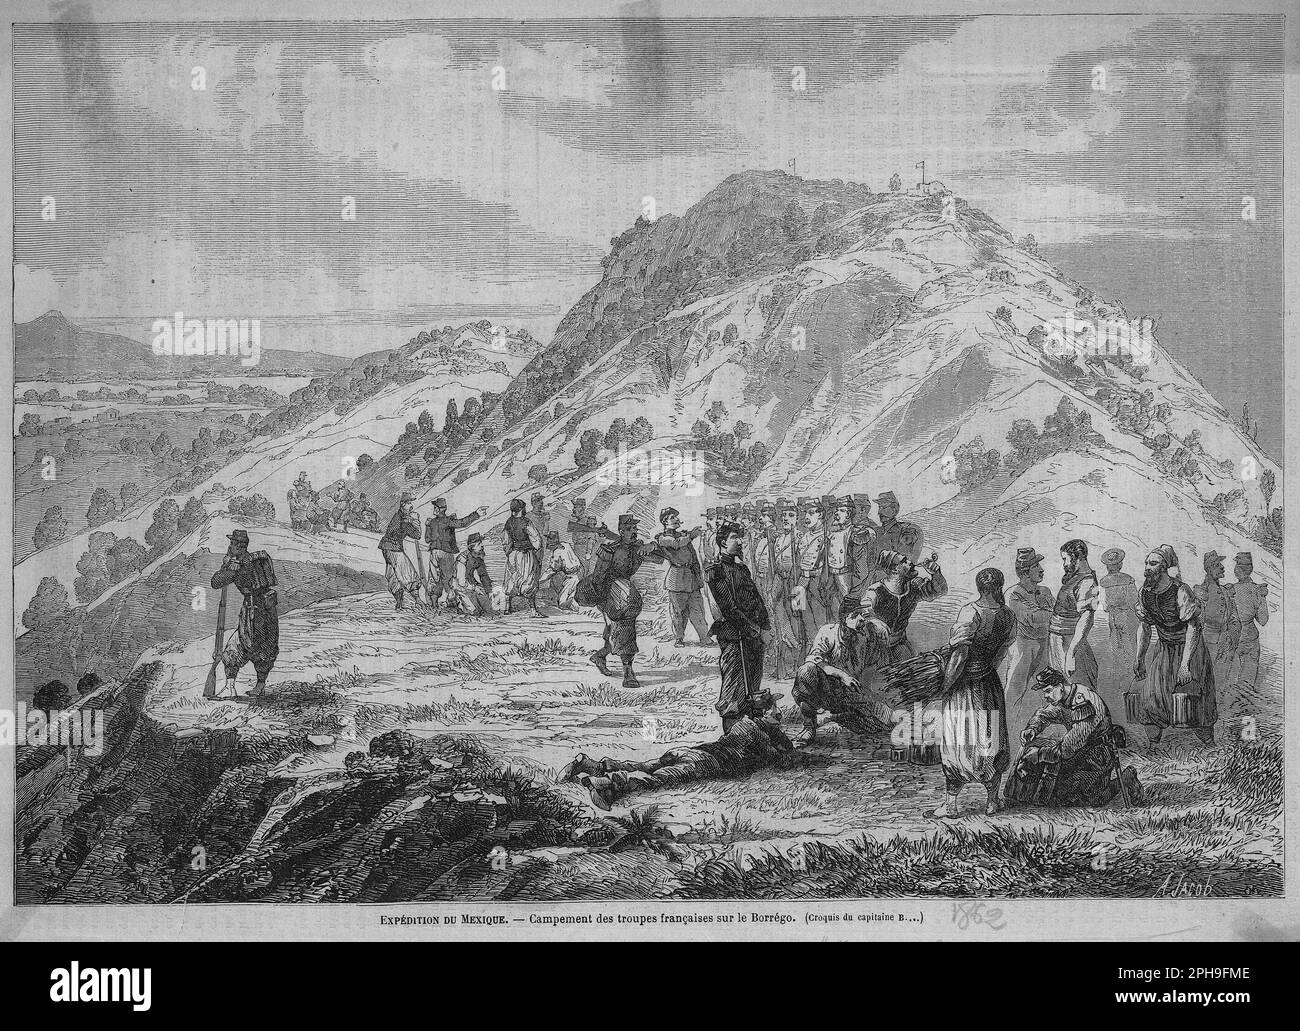 Campement et bivouac des troupes françaises sur le Borrégo, au Mexique sous le second Empire, en 1862 Banque D'Images